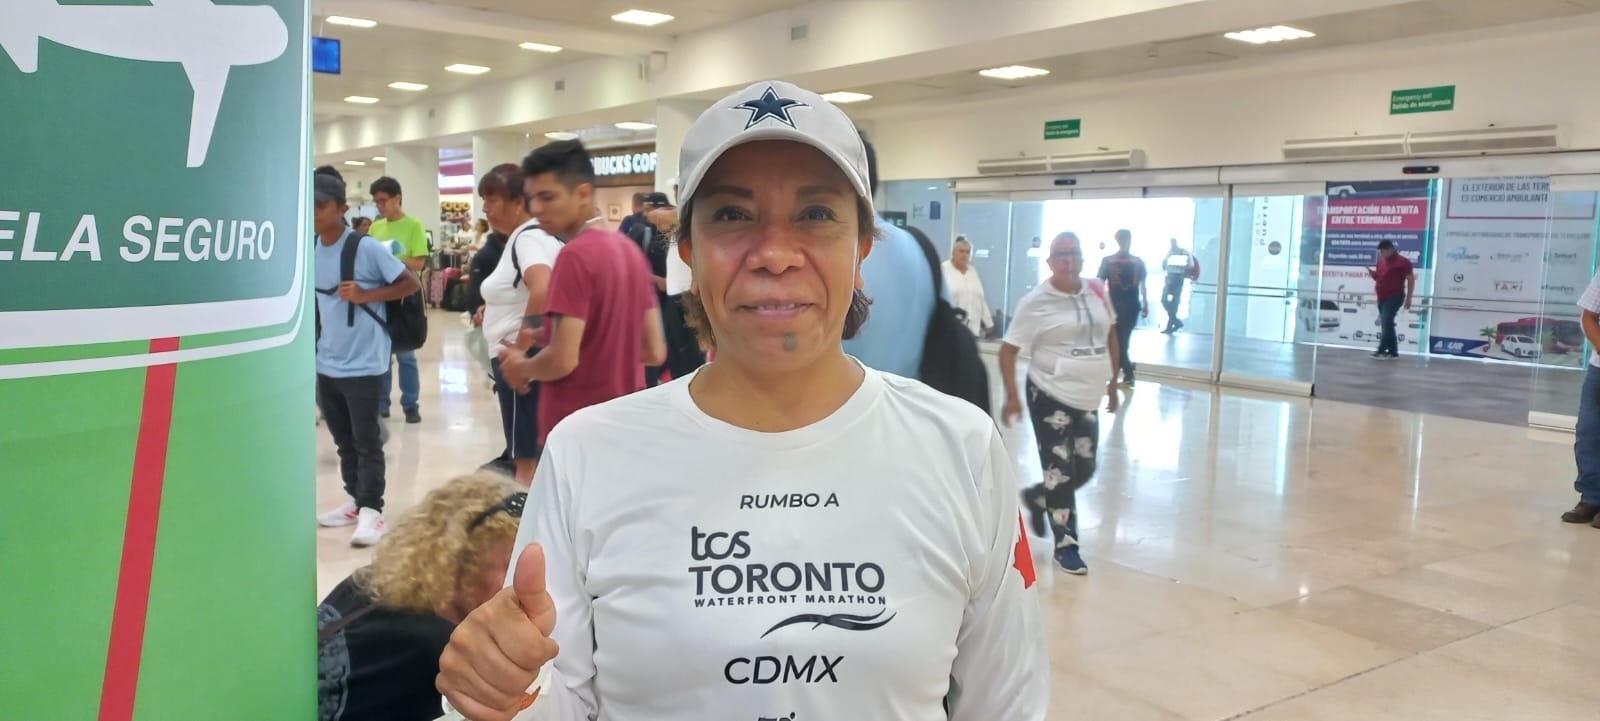 Aeropuerto de Cancún:  Mexicana va a Toronto a competir en un maratón